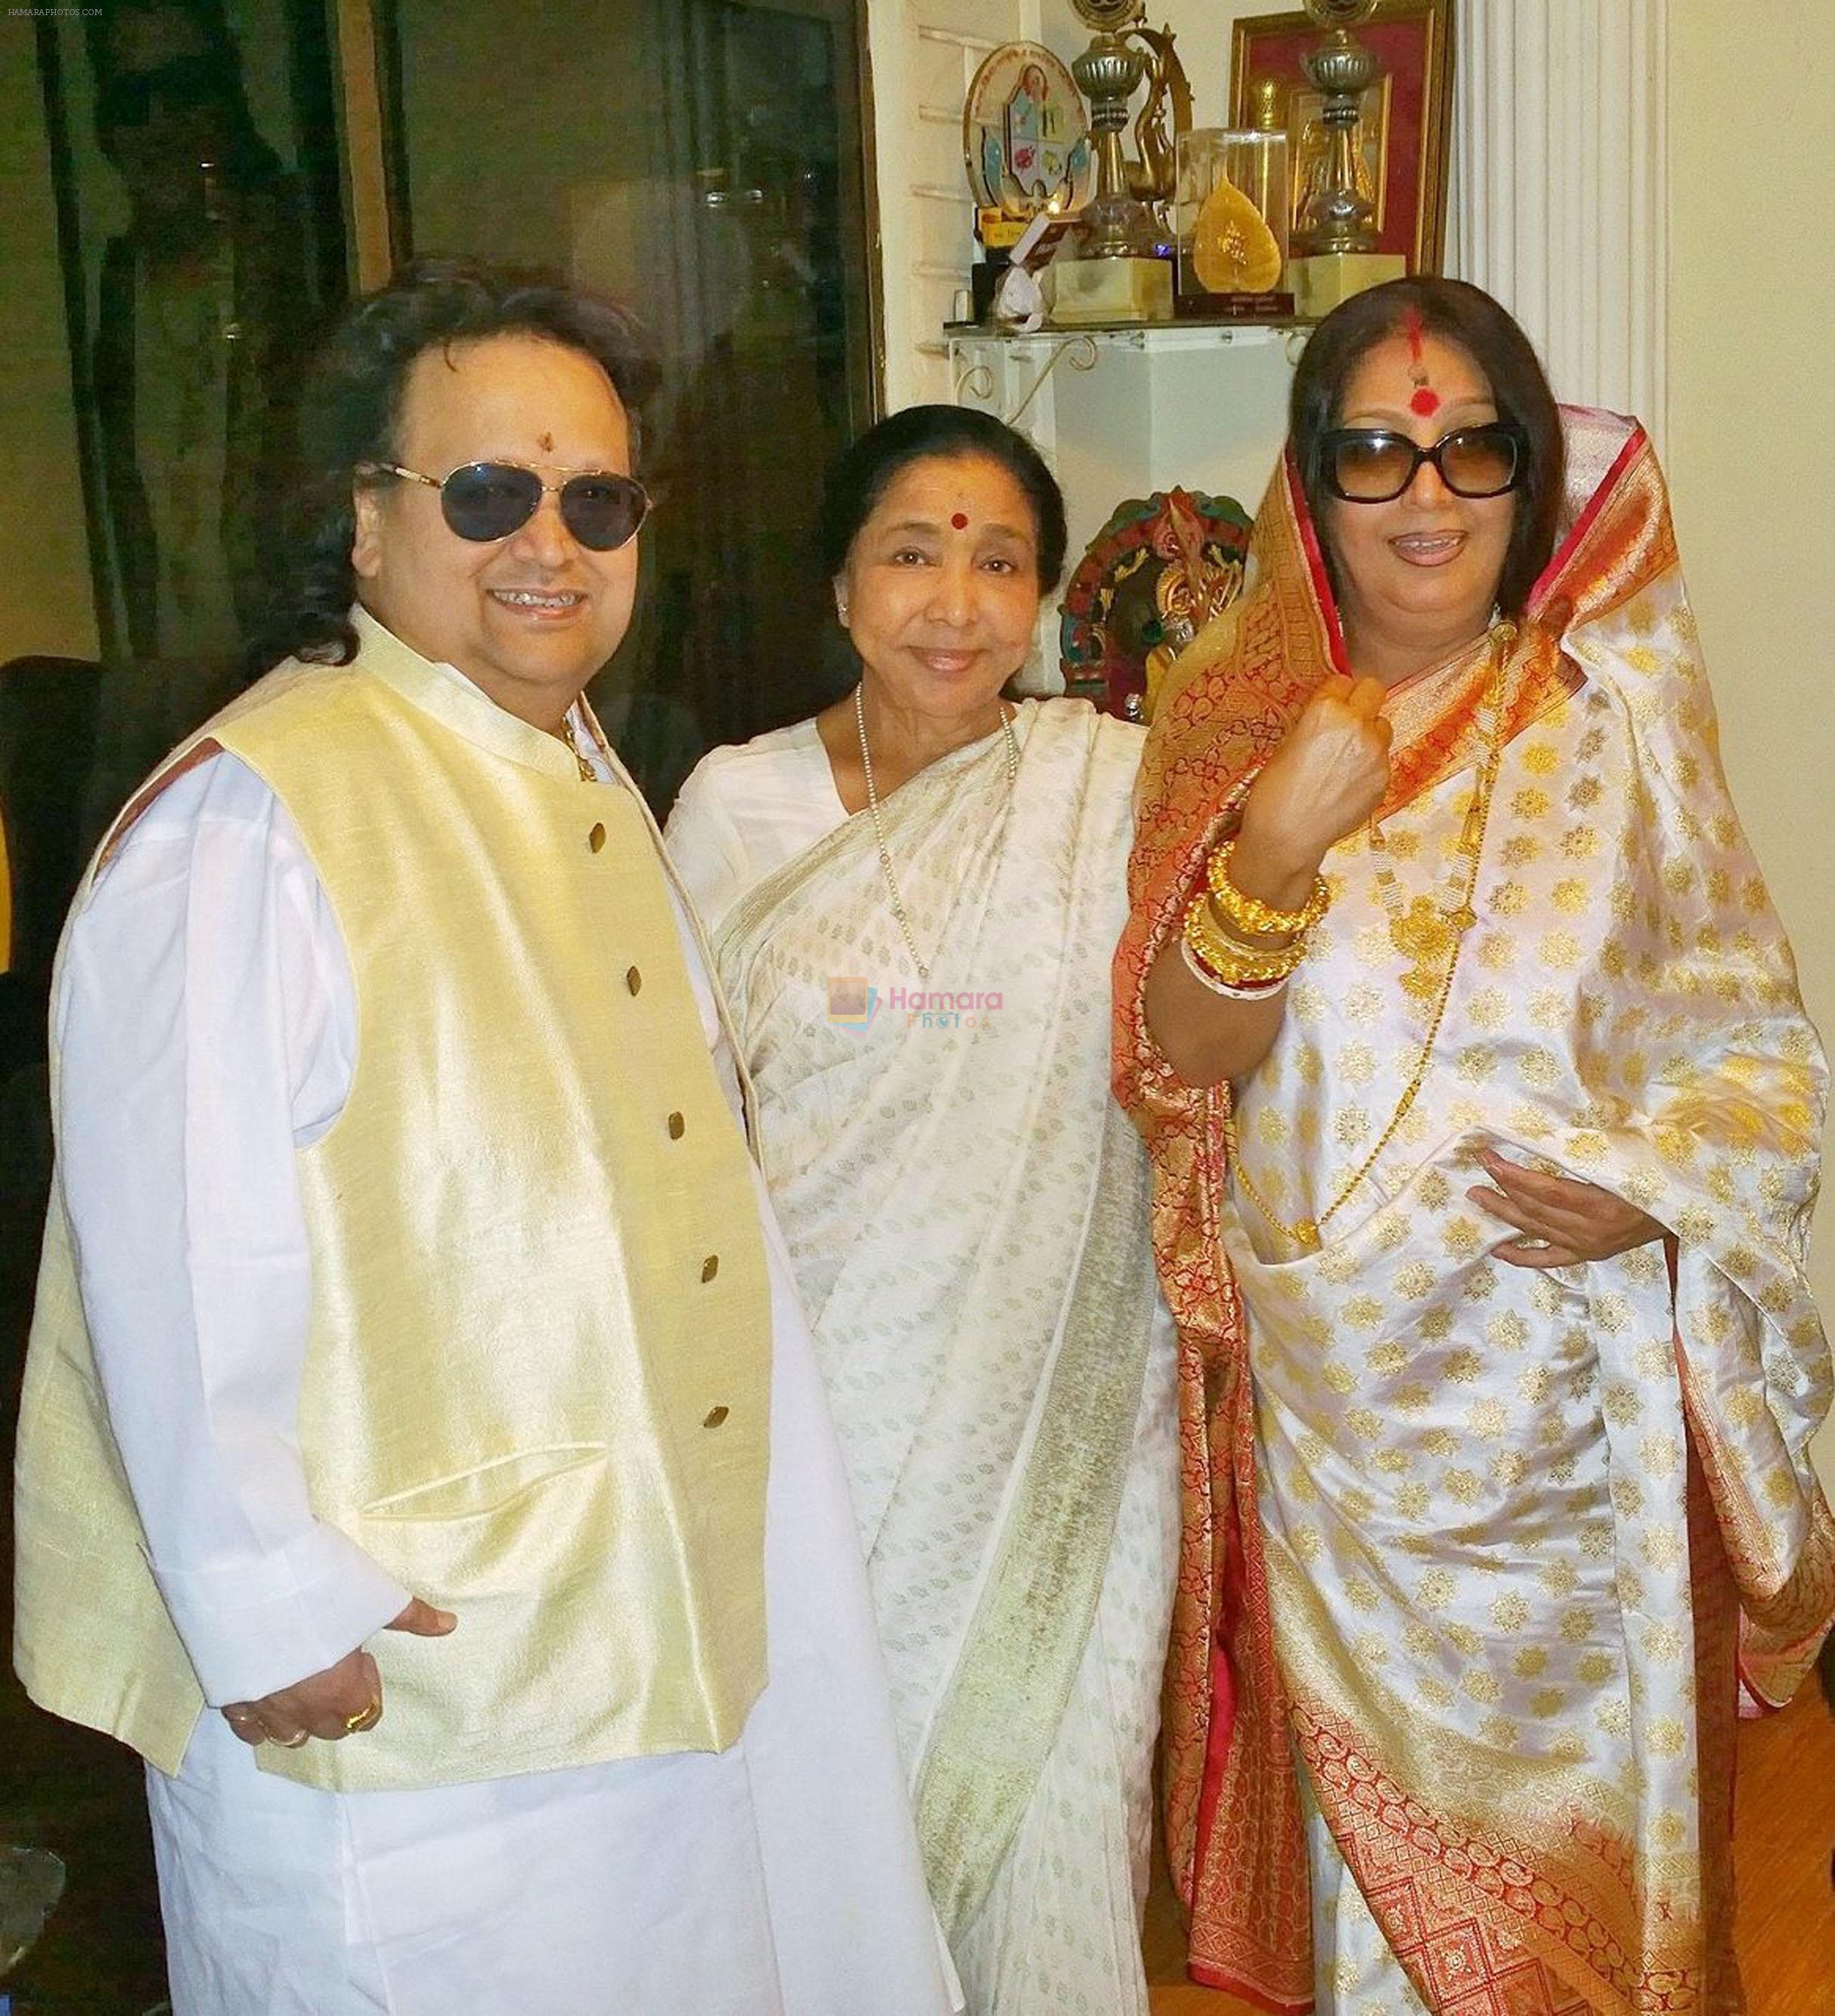 Bappi Lahiri, Asha Bhosle and Chitrani Lahiri at the Lahiri House Saraswati Puja